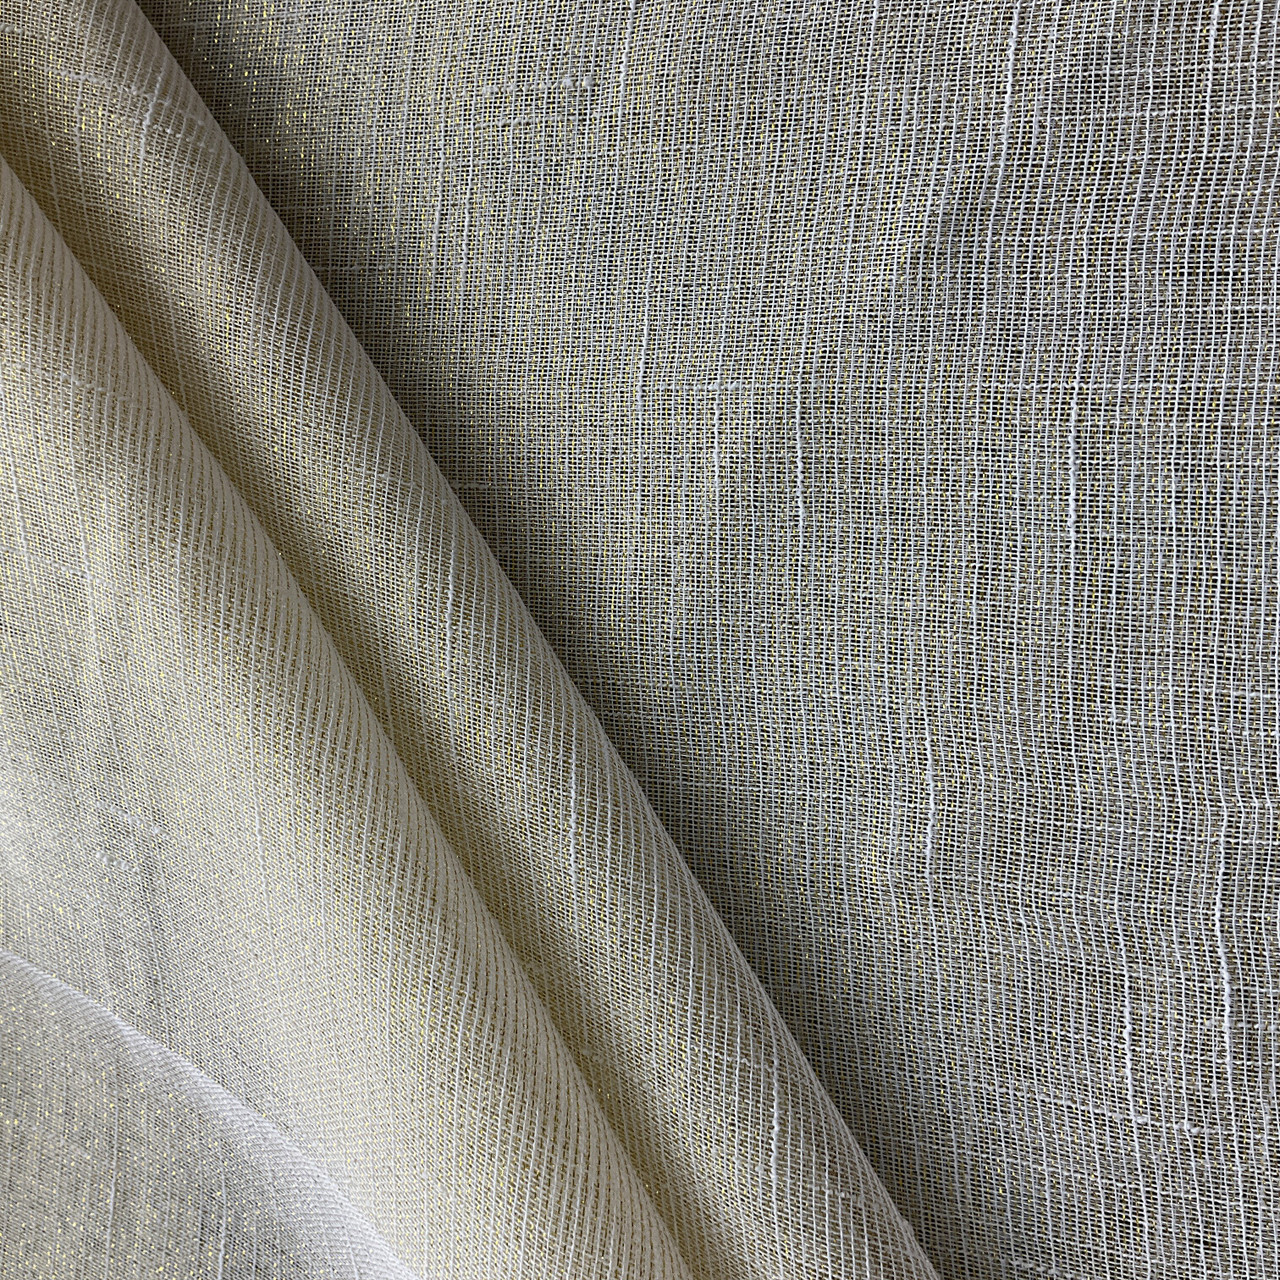 110 Faux Linen Sheer Metallic Ivory/Gold, Very Lightweight Linen Fabric, Home Decor Fabric